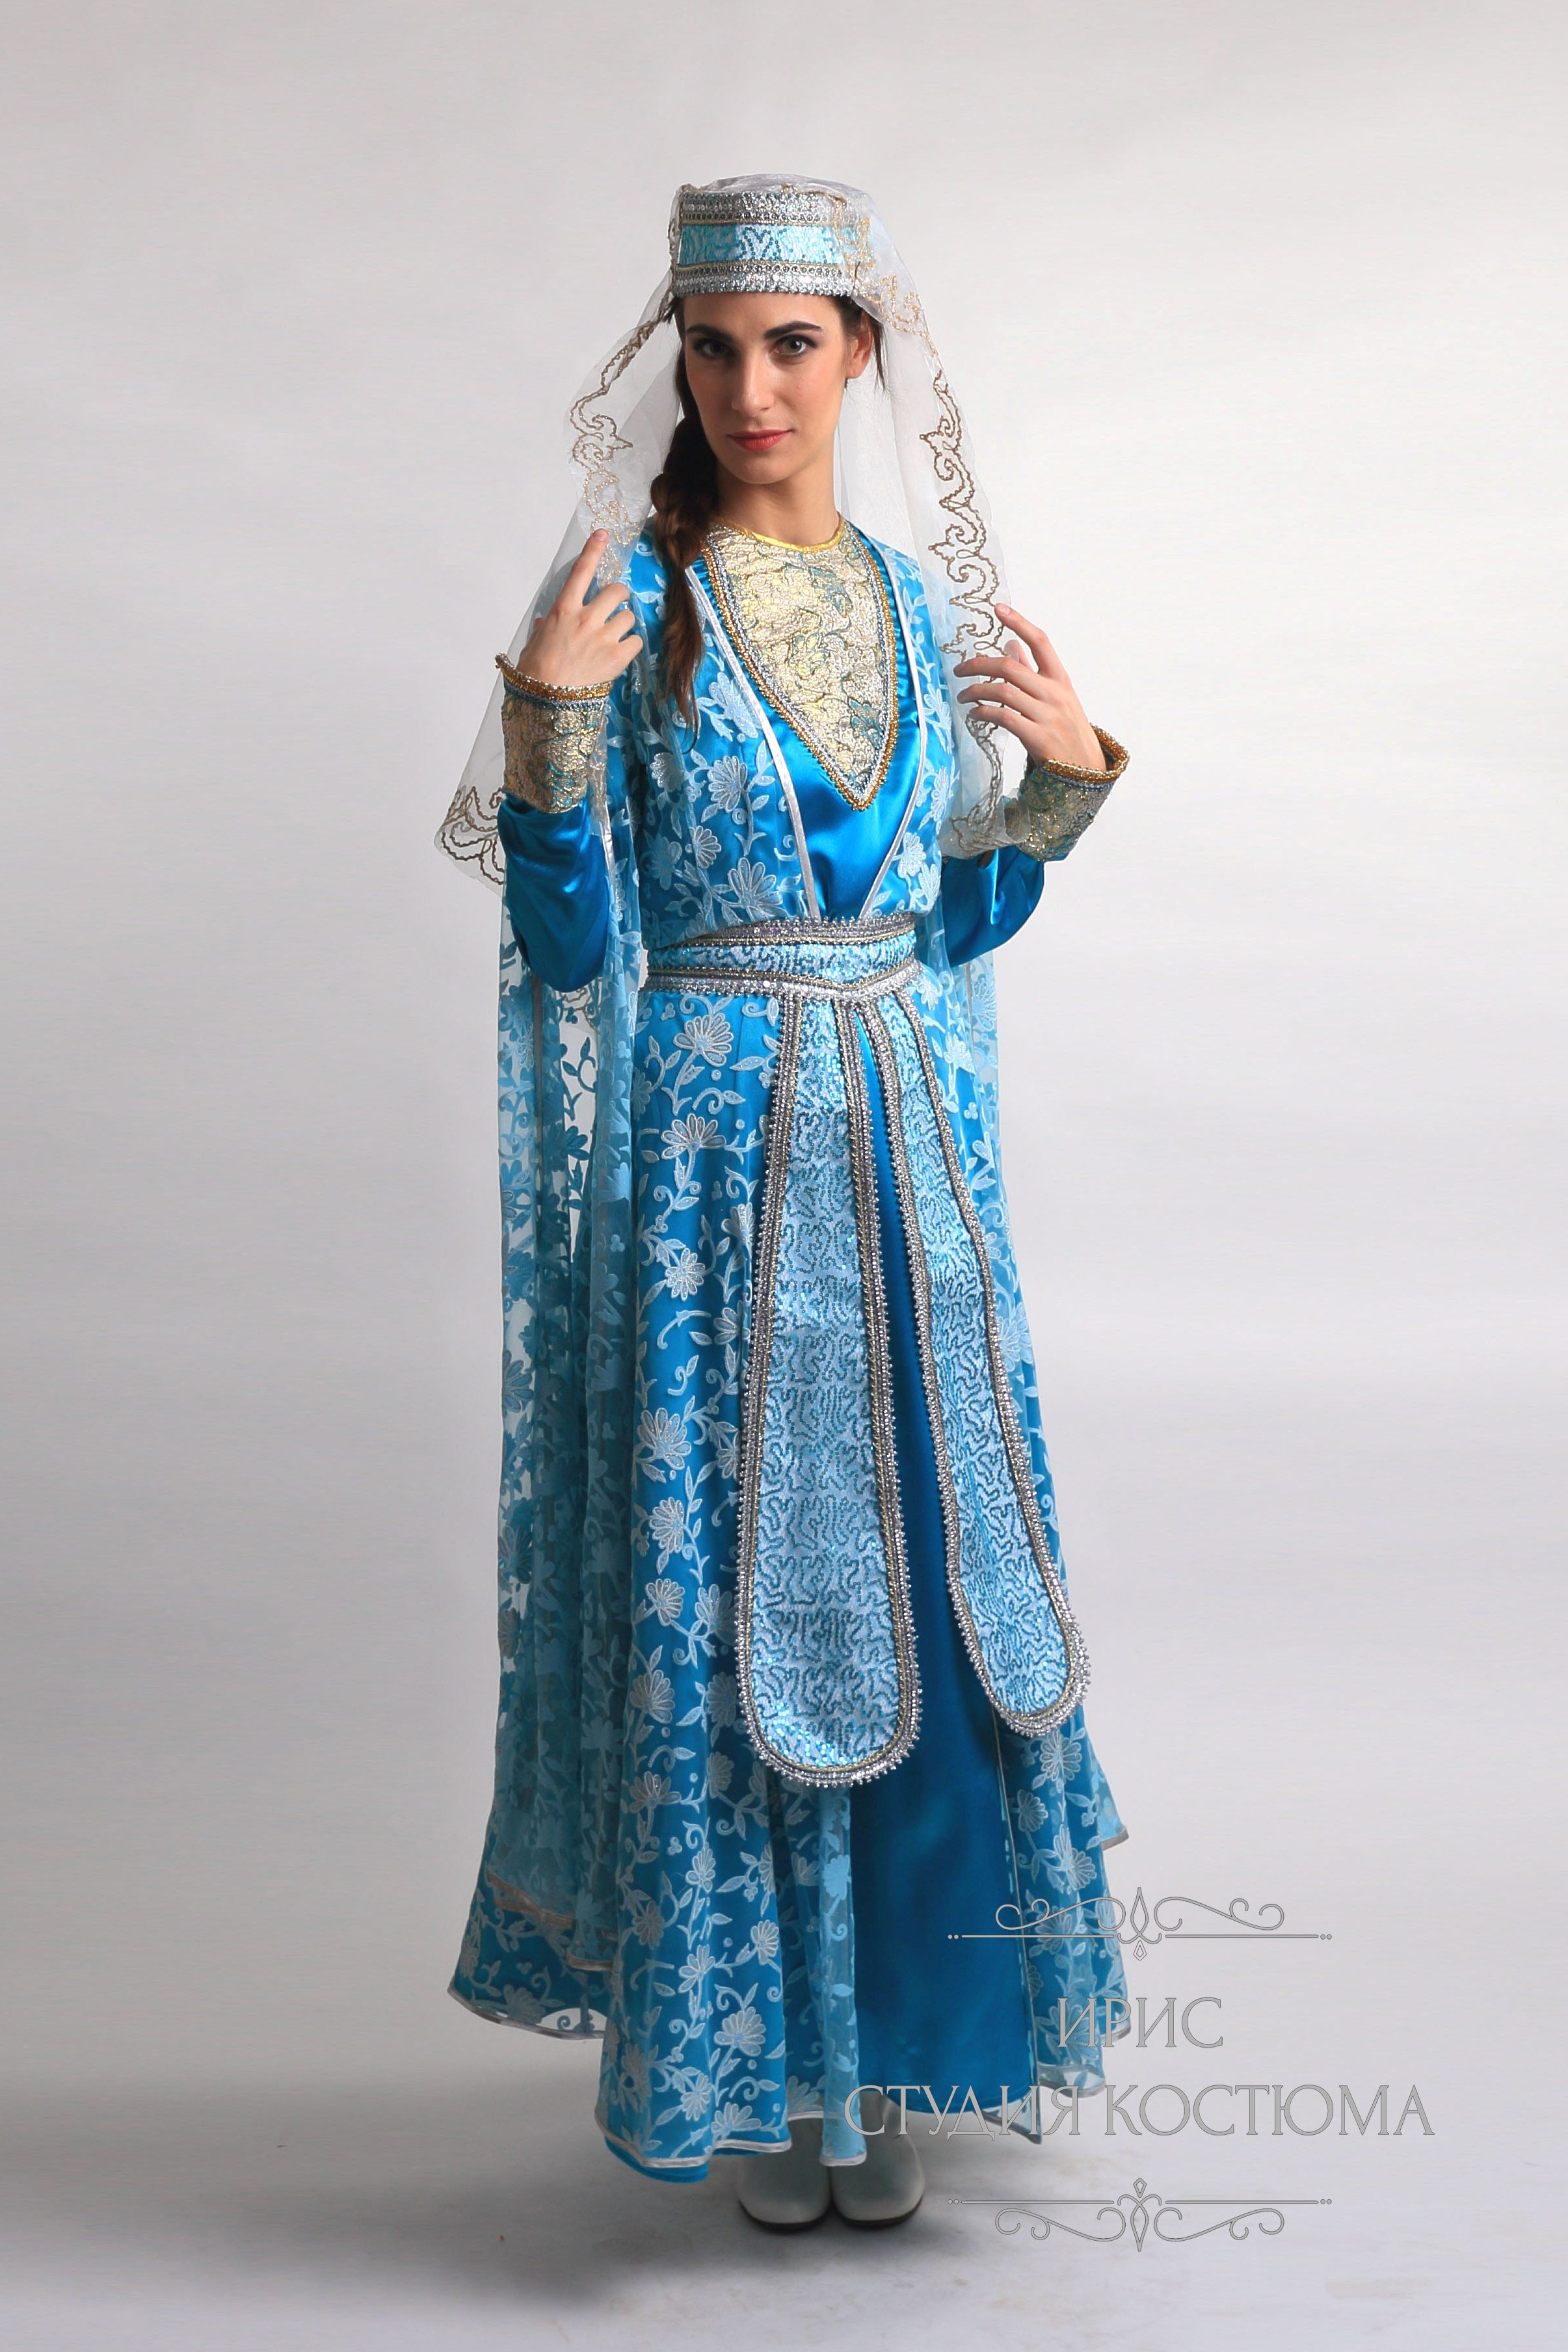 Женский национальный костюм грузинок